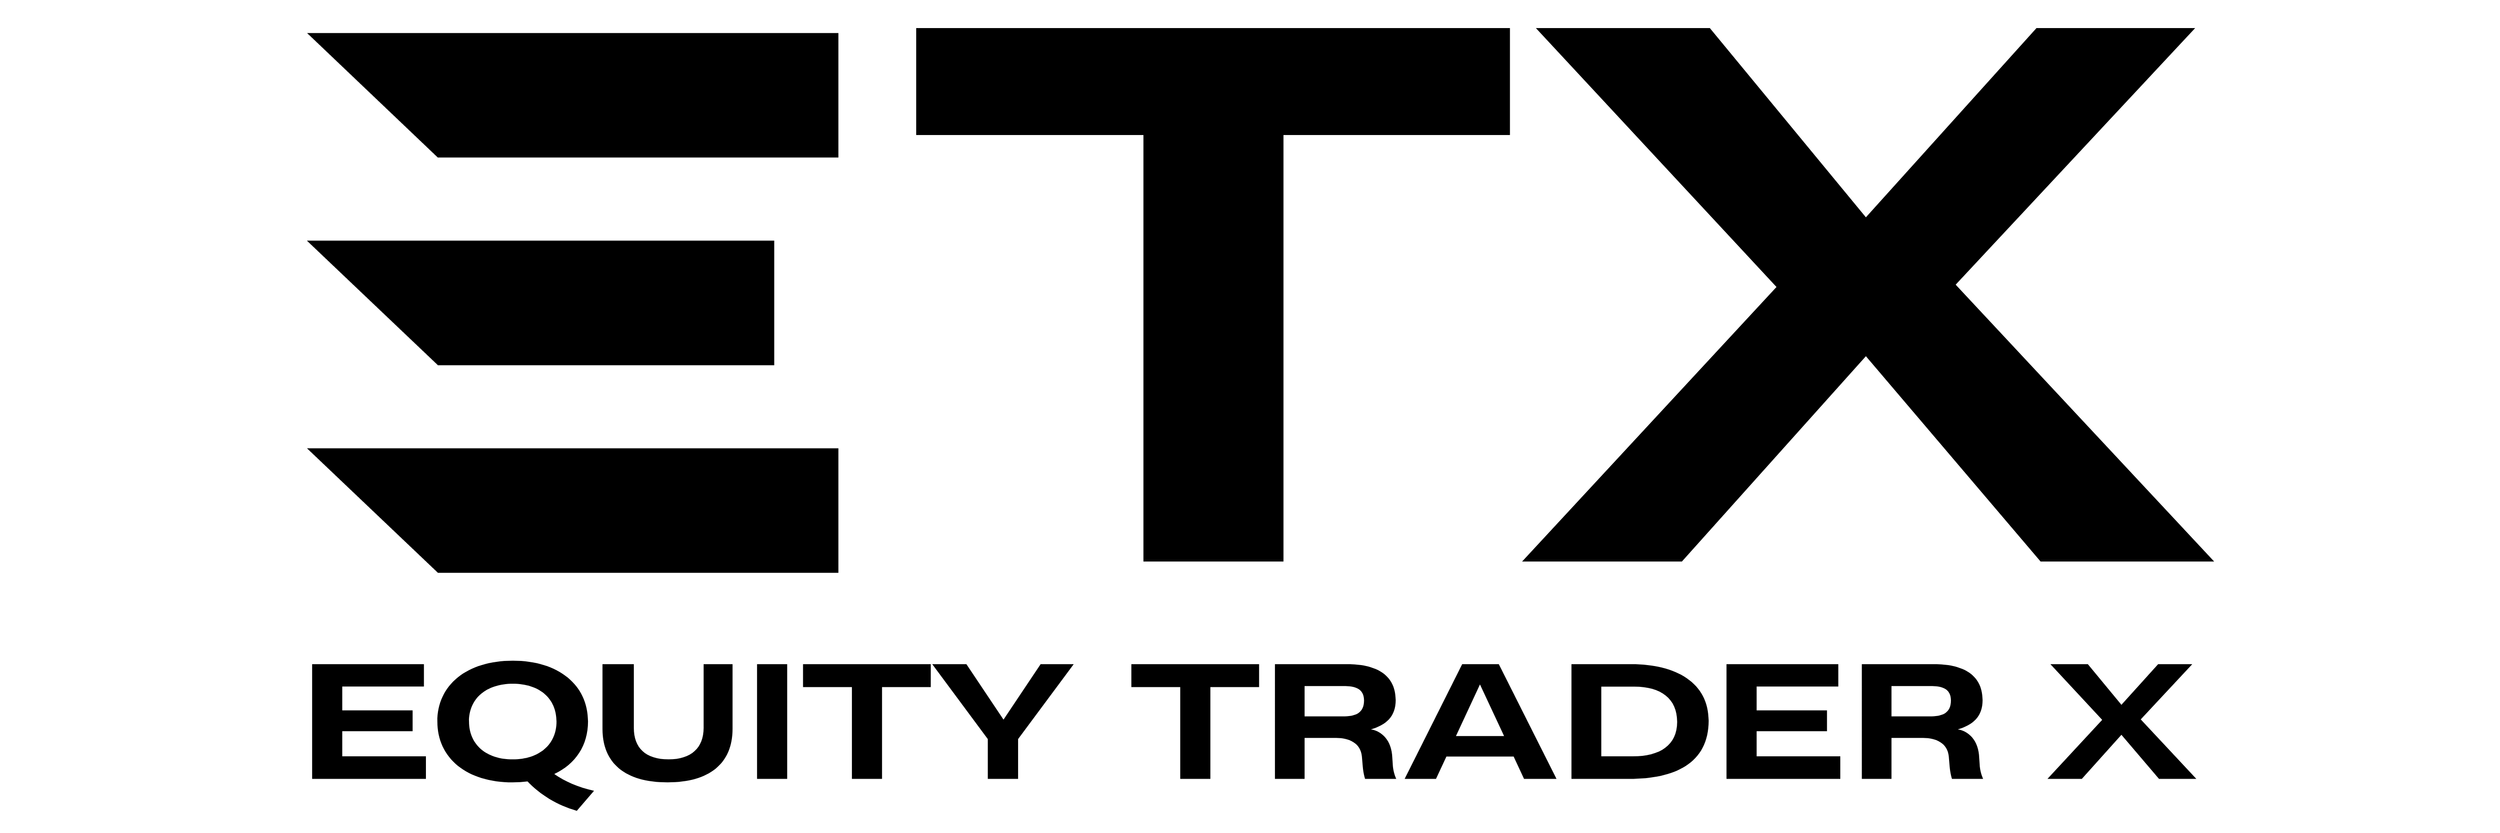 ETX Logo Black #1.png